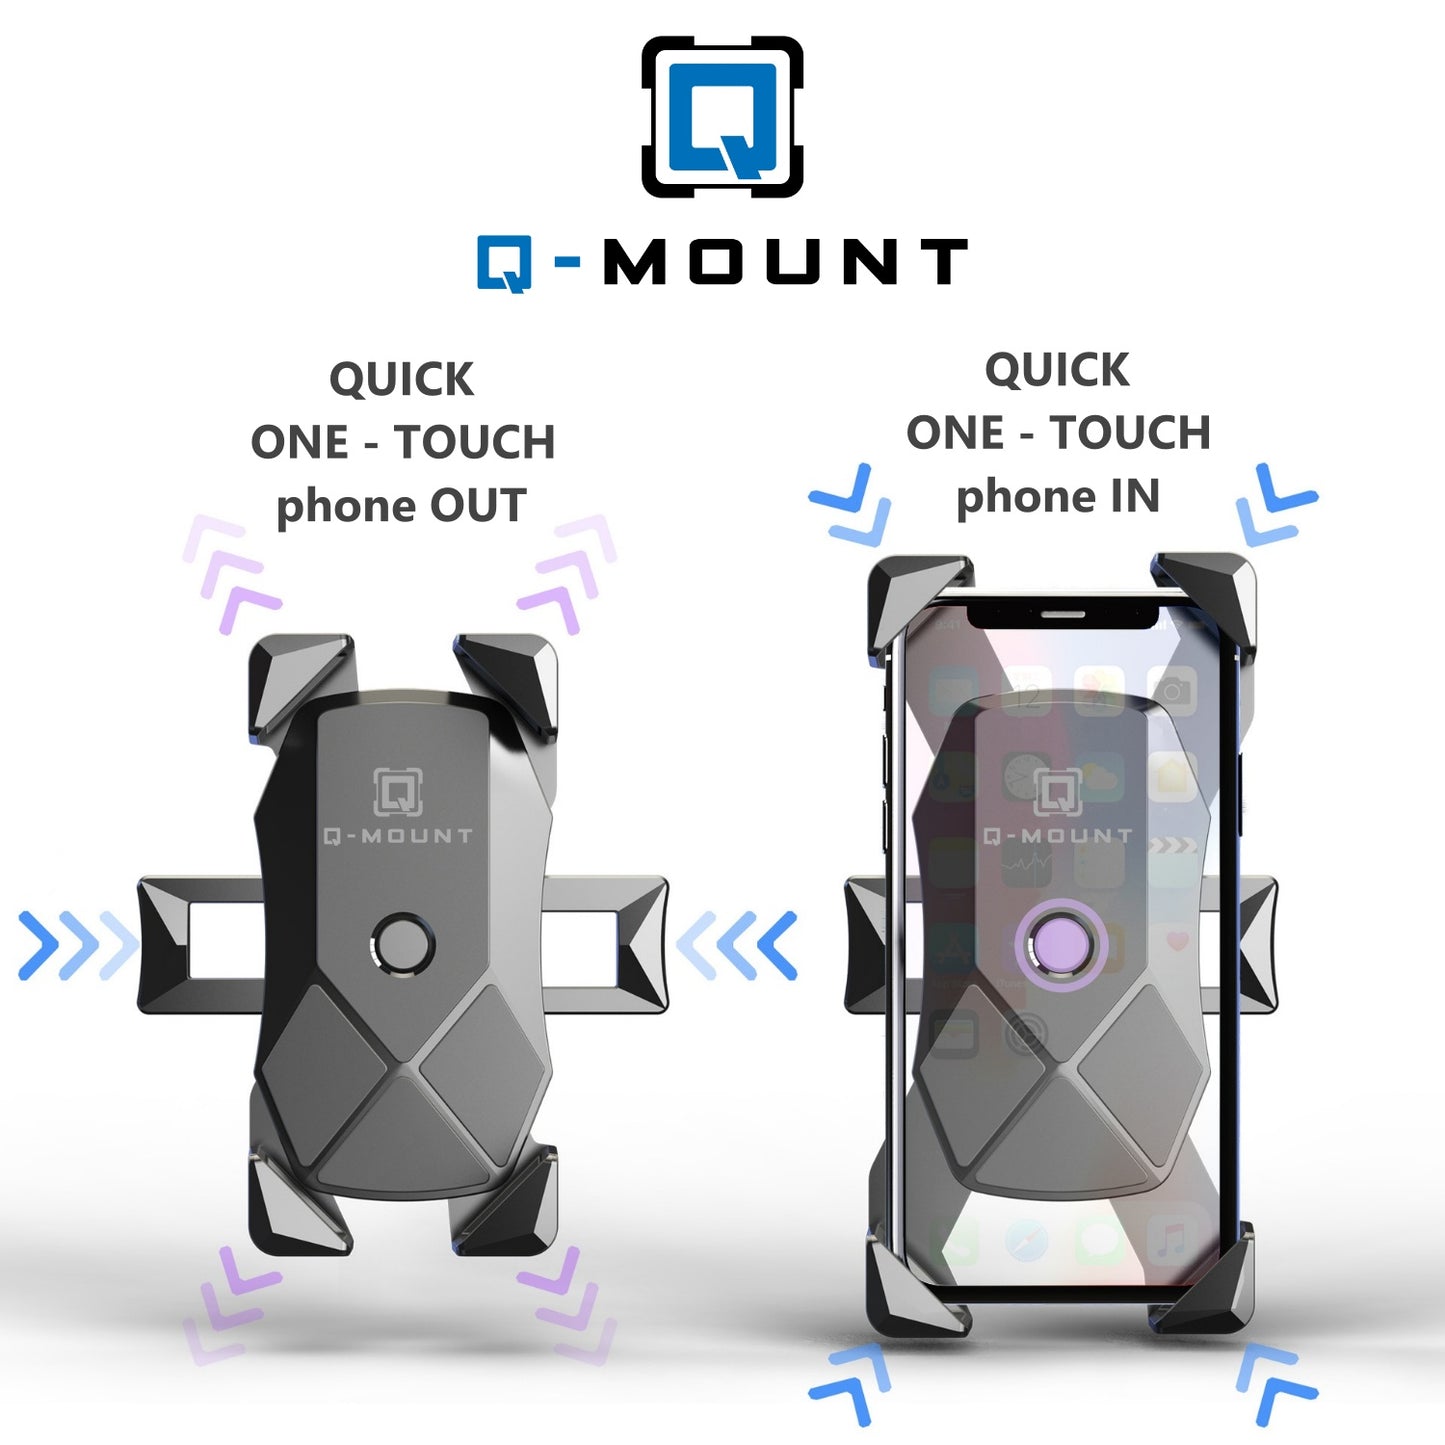 Q-MOUNT Easy